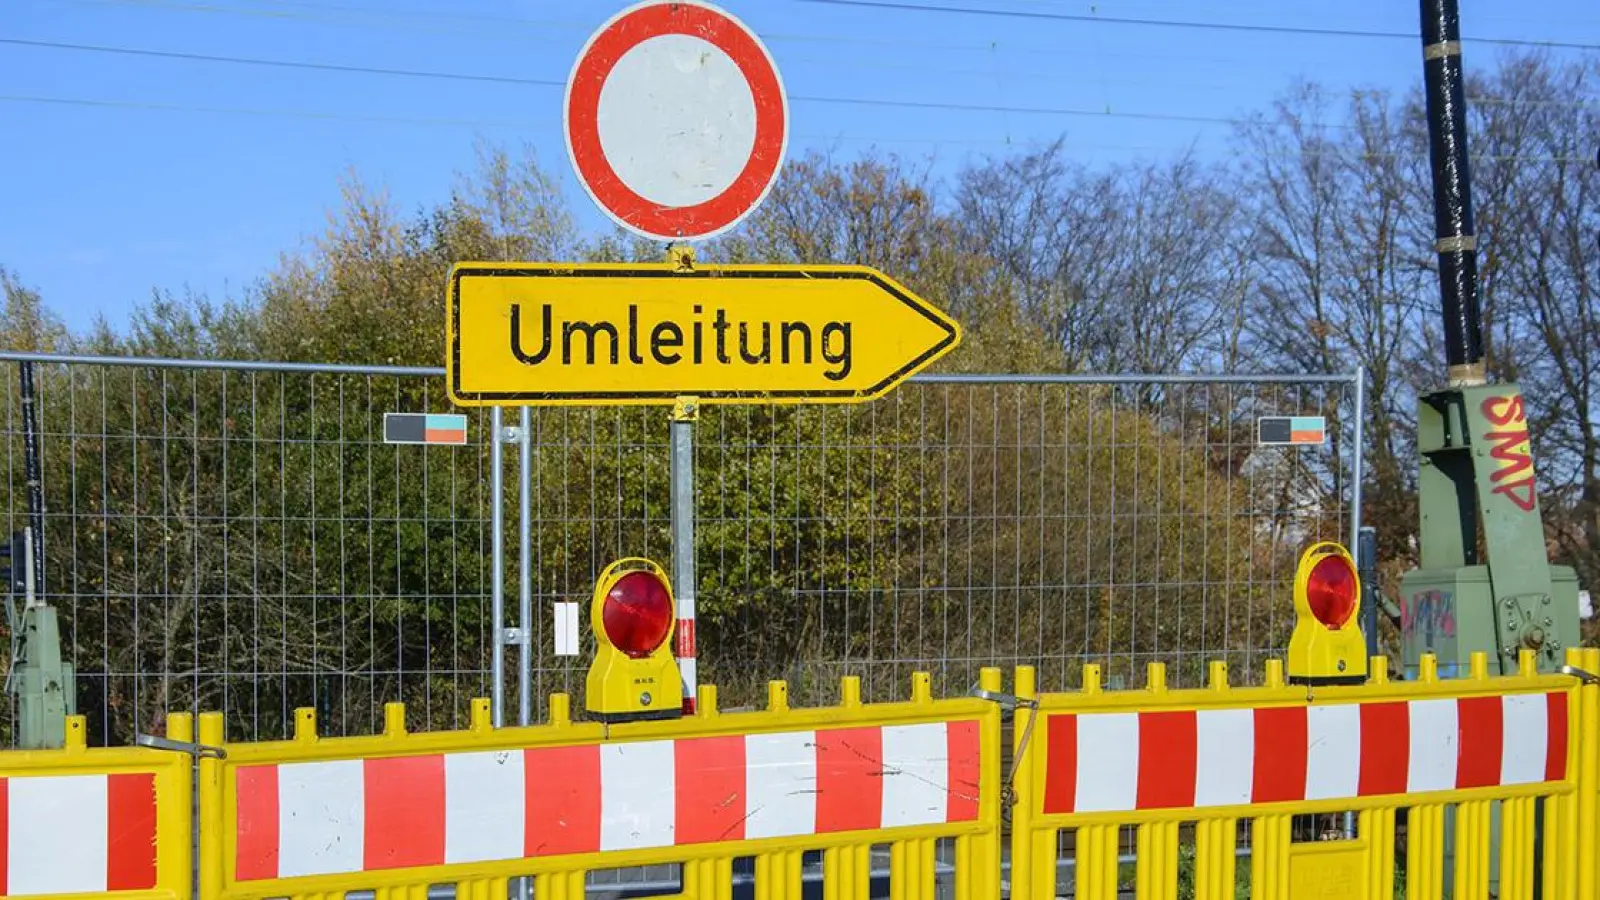 Königsallee in Bayreuth gesperrt: Das ist die Umleitung (Foto: Pixabay/Reginal)